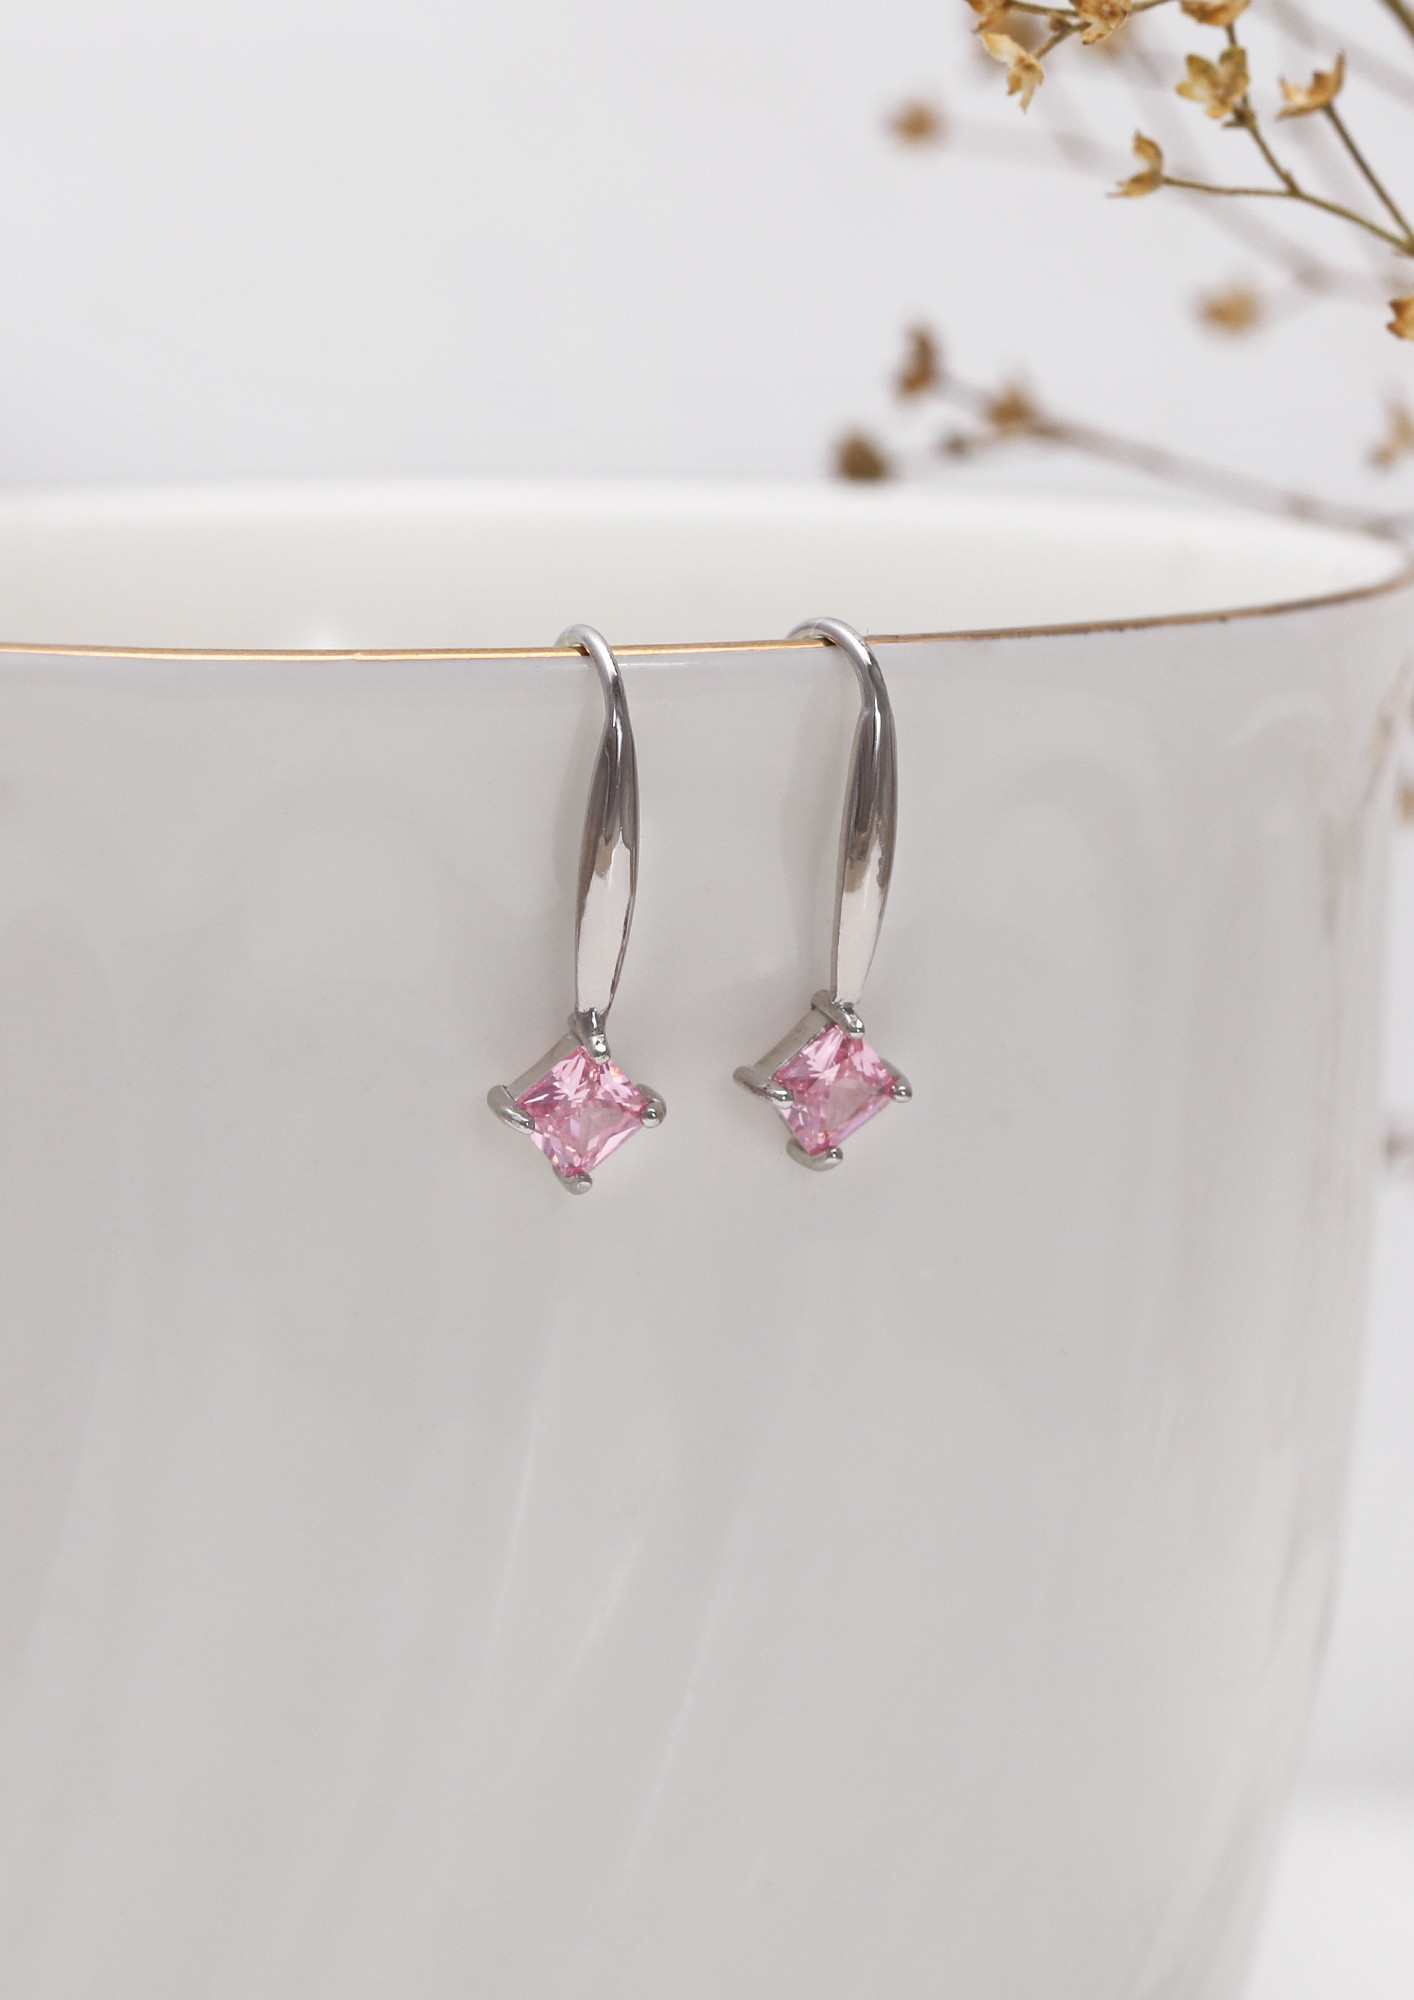 Buy Dangle Earrings online for women | Handamde Filigree – Silverlinings